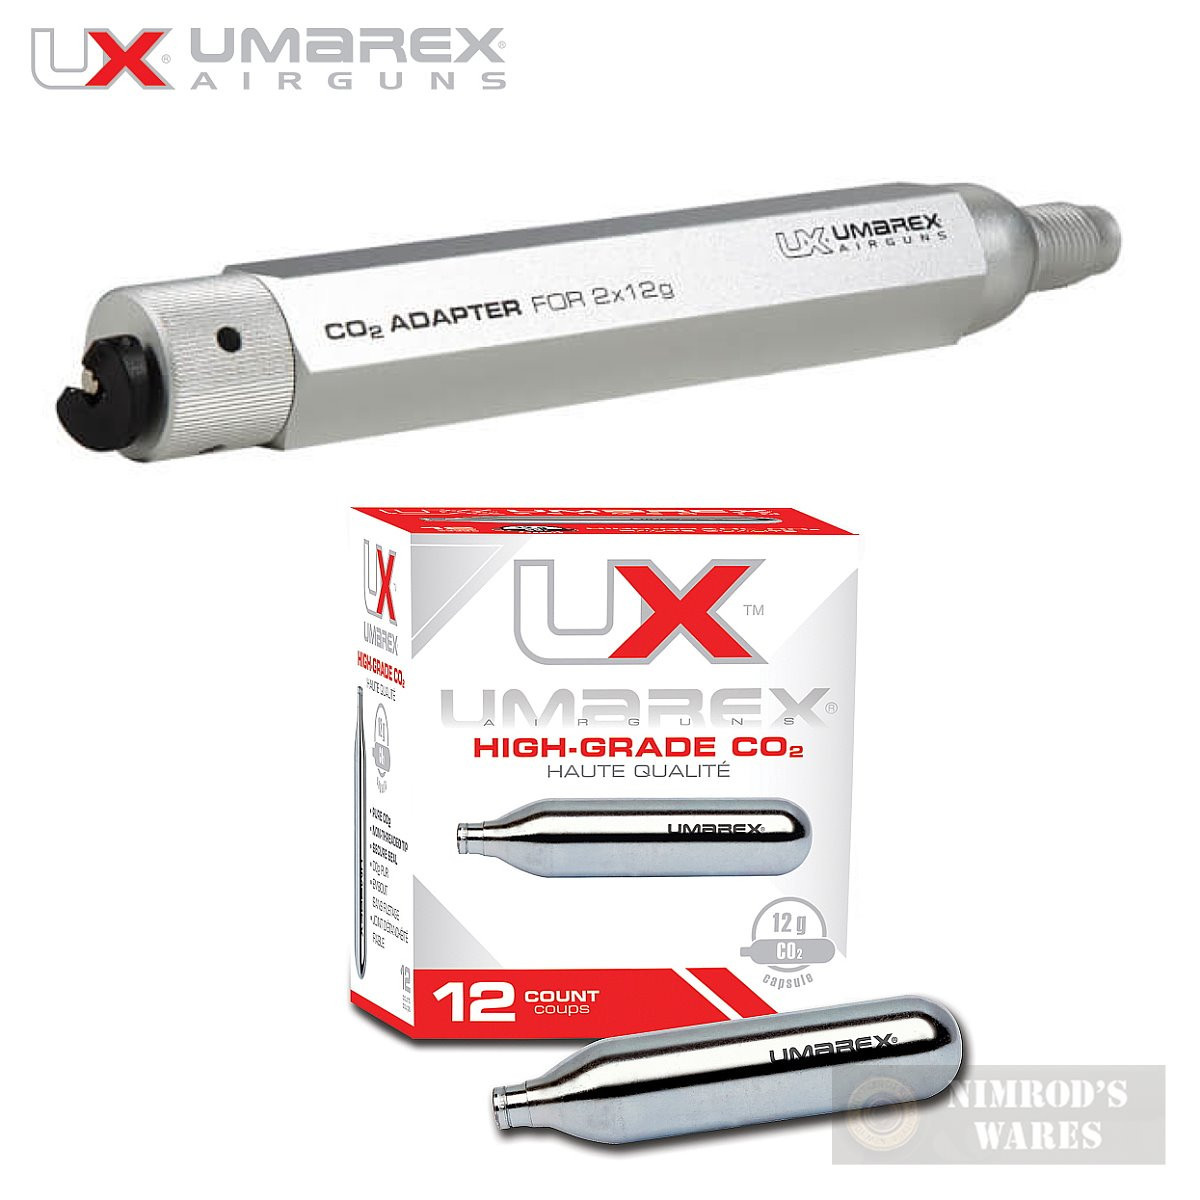 UMAREX 2x12 gram CO2 ADAPTER + 12-PK 12 gram CO2 CARTRIDGES for Air Rifles  2211284 2252533 - NimrodsWares.com